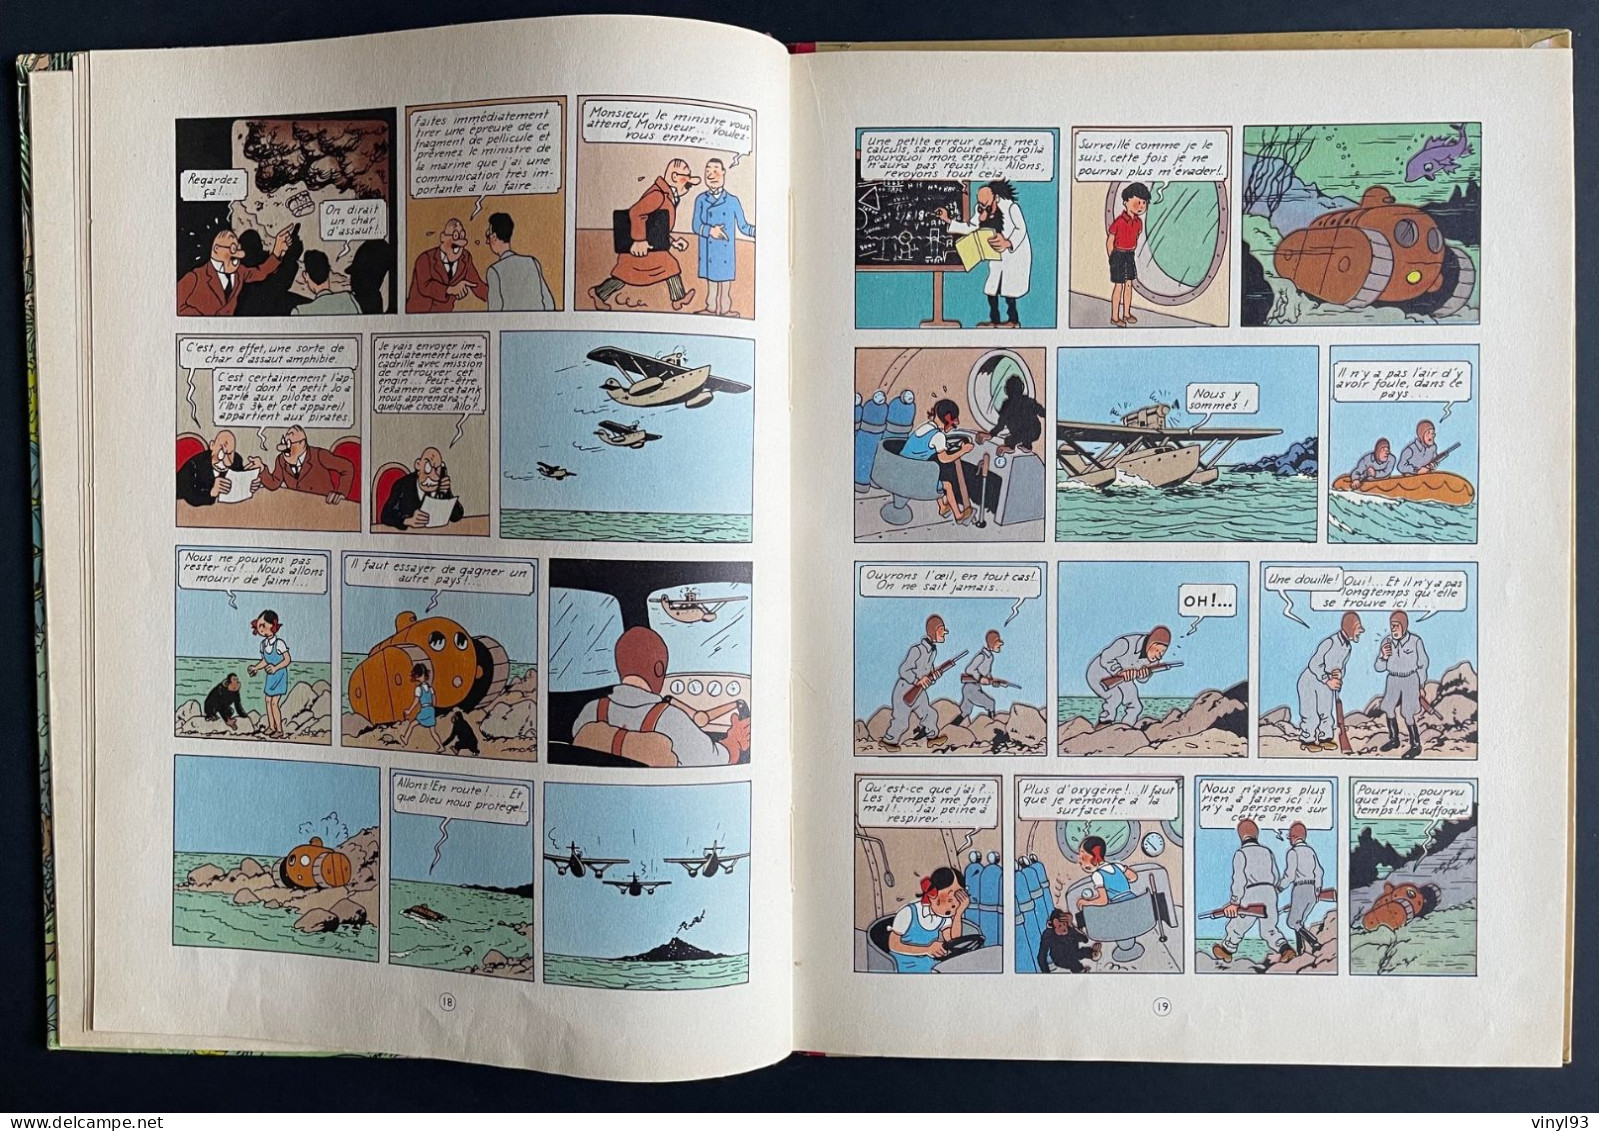 1957 - Album des aventures de Jo, Zette... "L'éruption du Karamako" épisode 2 - B 20 bis - Casterman - très bon état